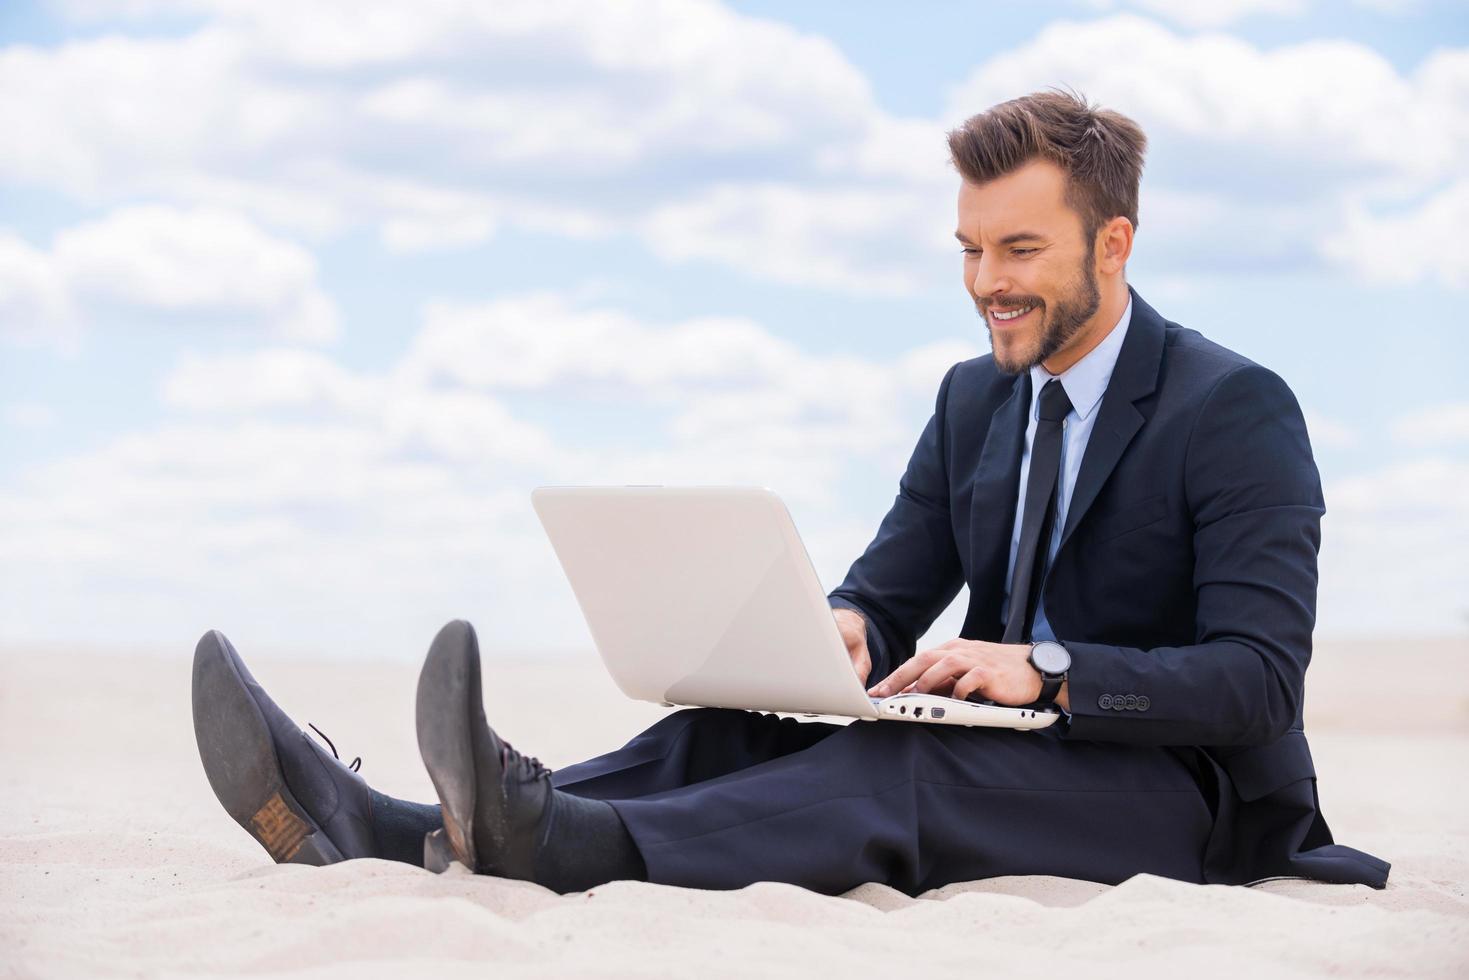 gran lugar para trabajar. un joven alegre con ropa formal trabajando en una laptop mientras se sienta en la arena en el desierto foto